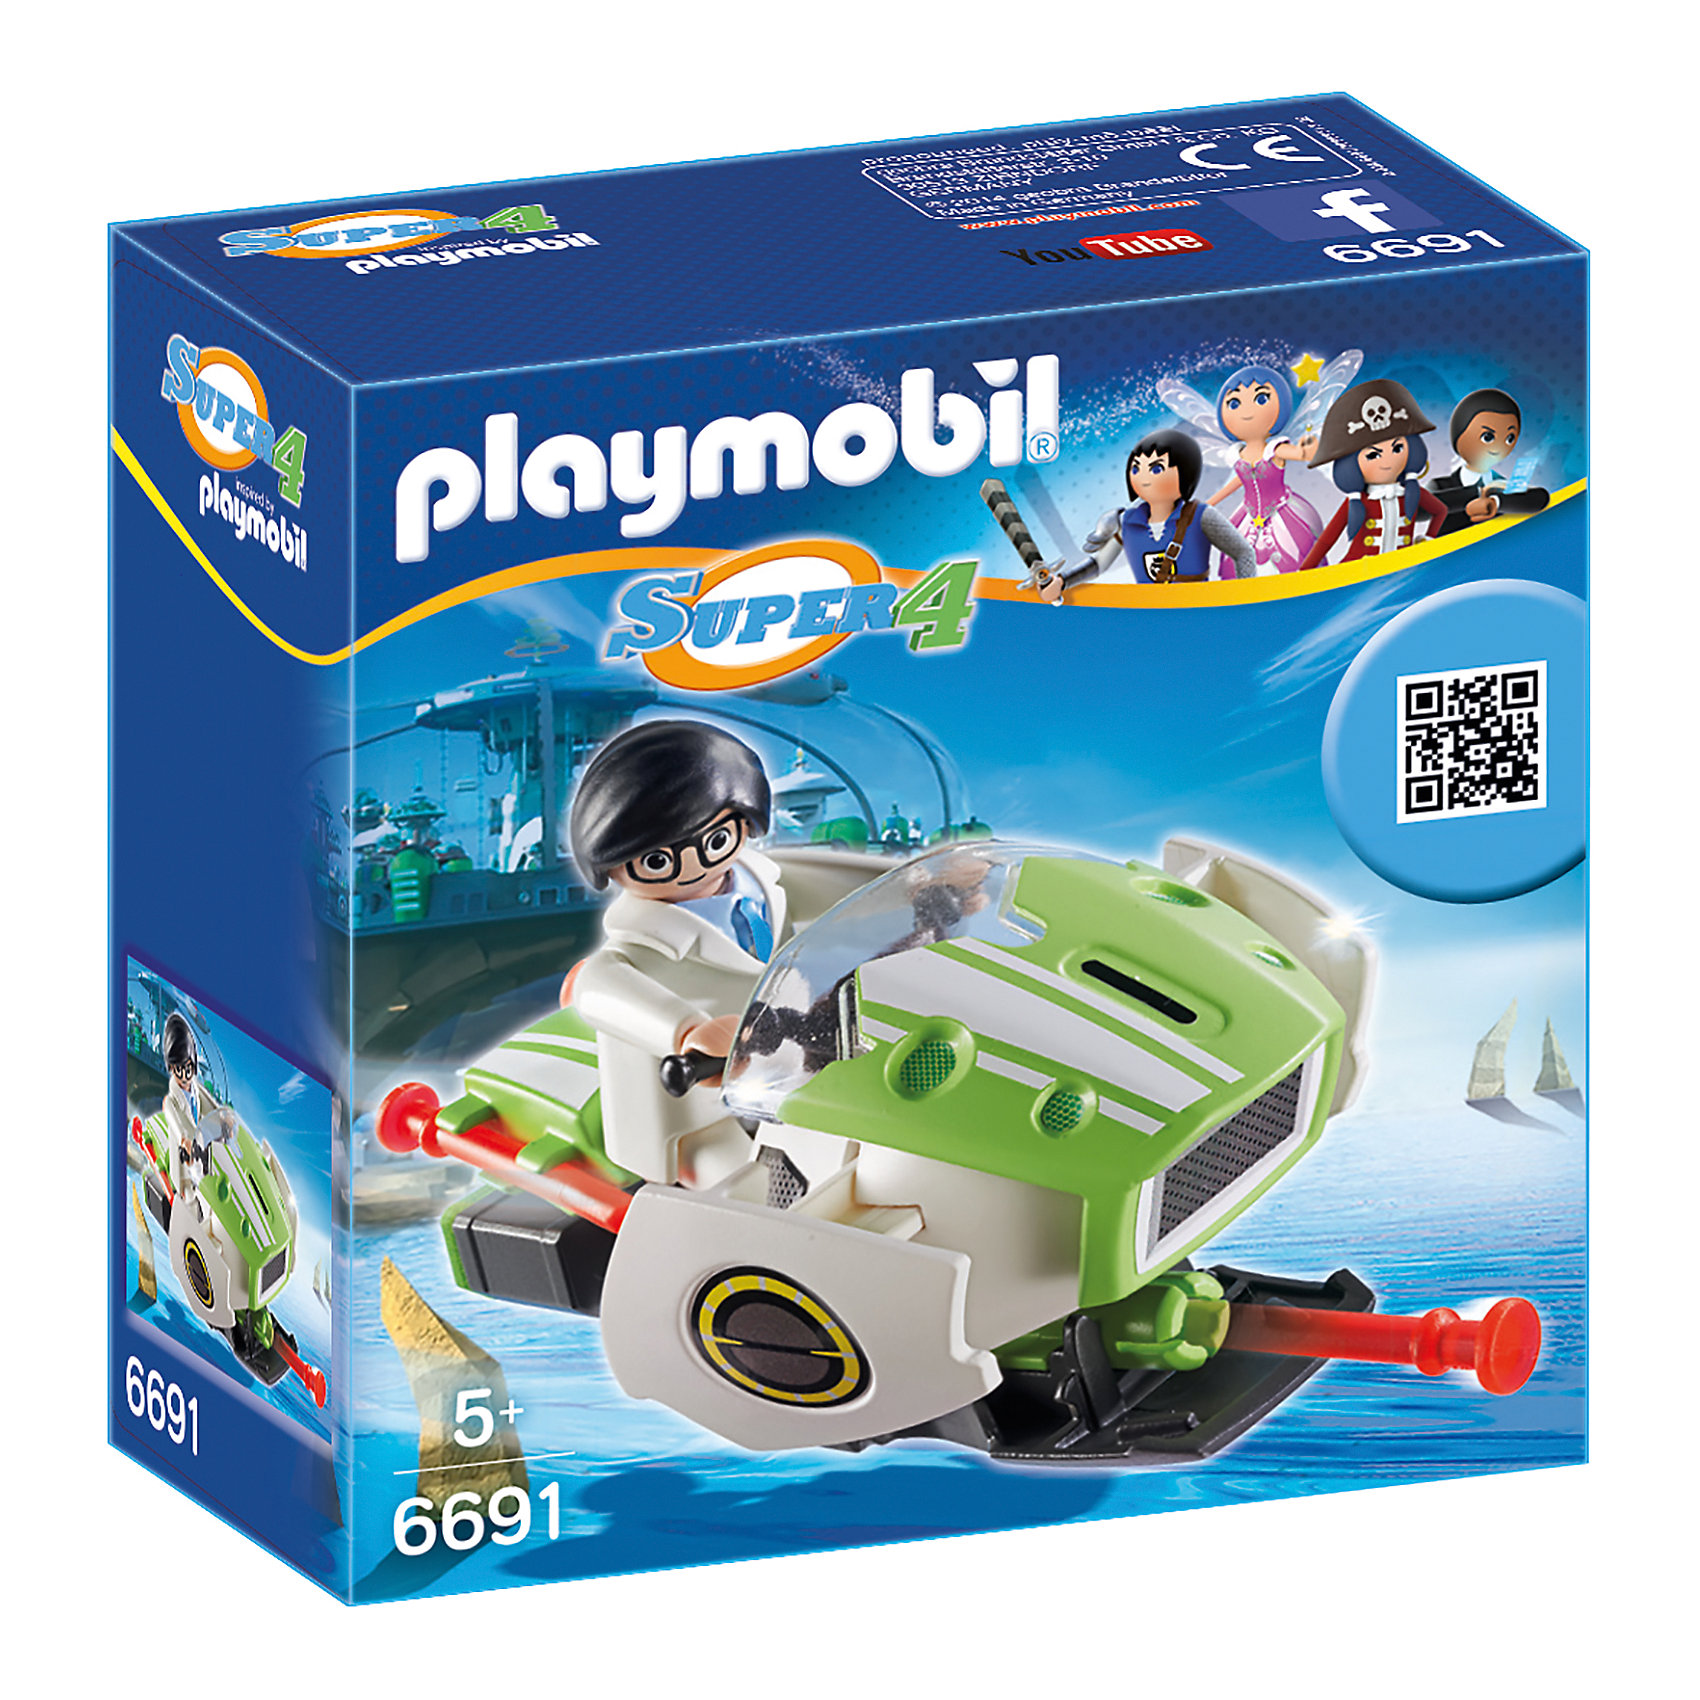 фото Конструктор Playmobil "Супер 4" Скайджет Playmobil®